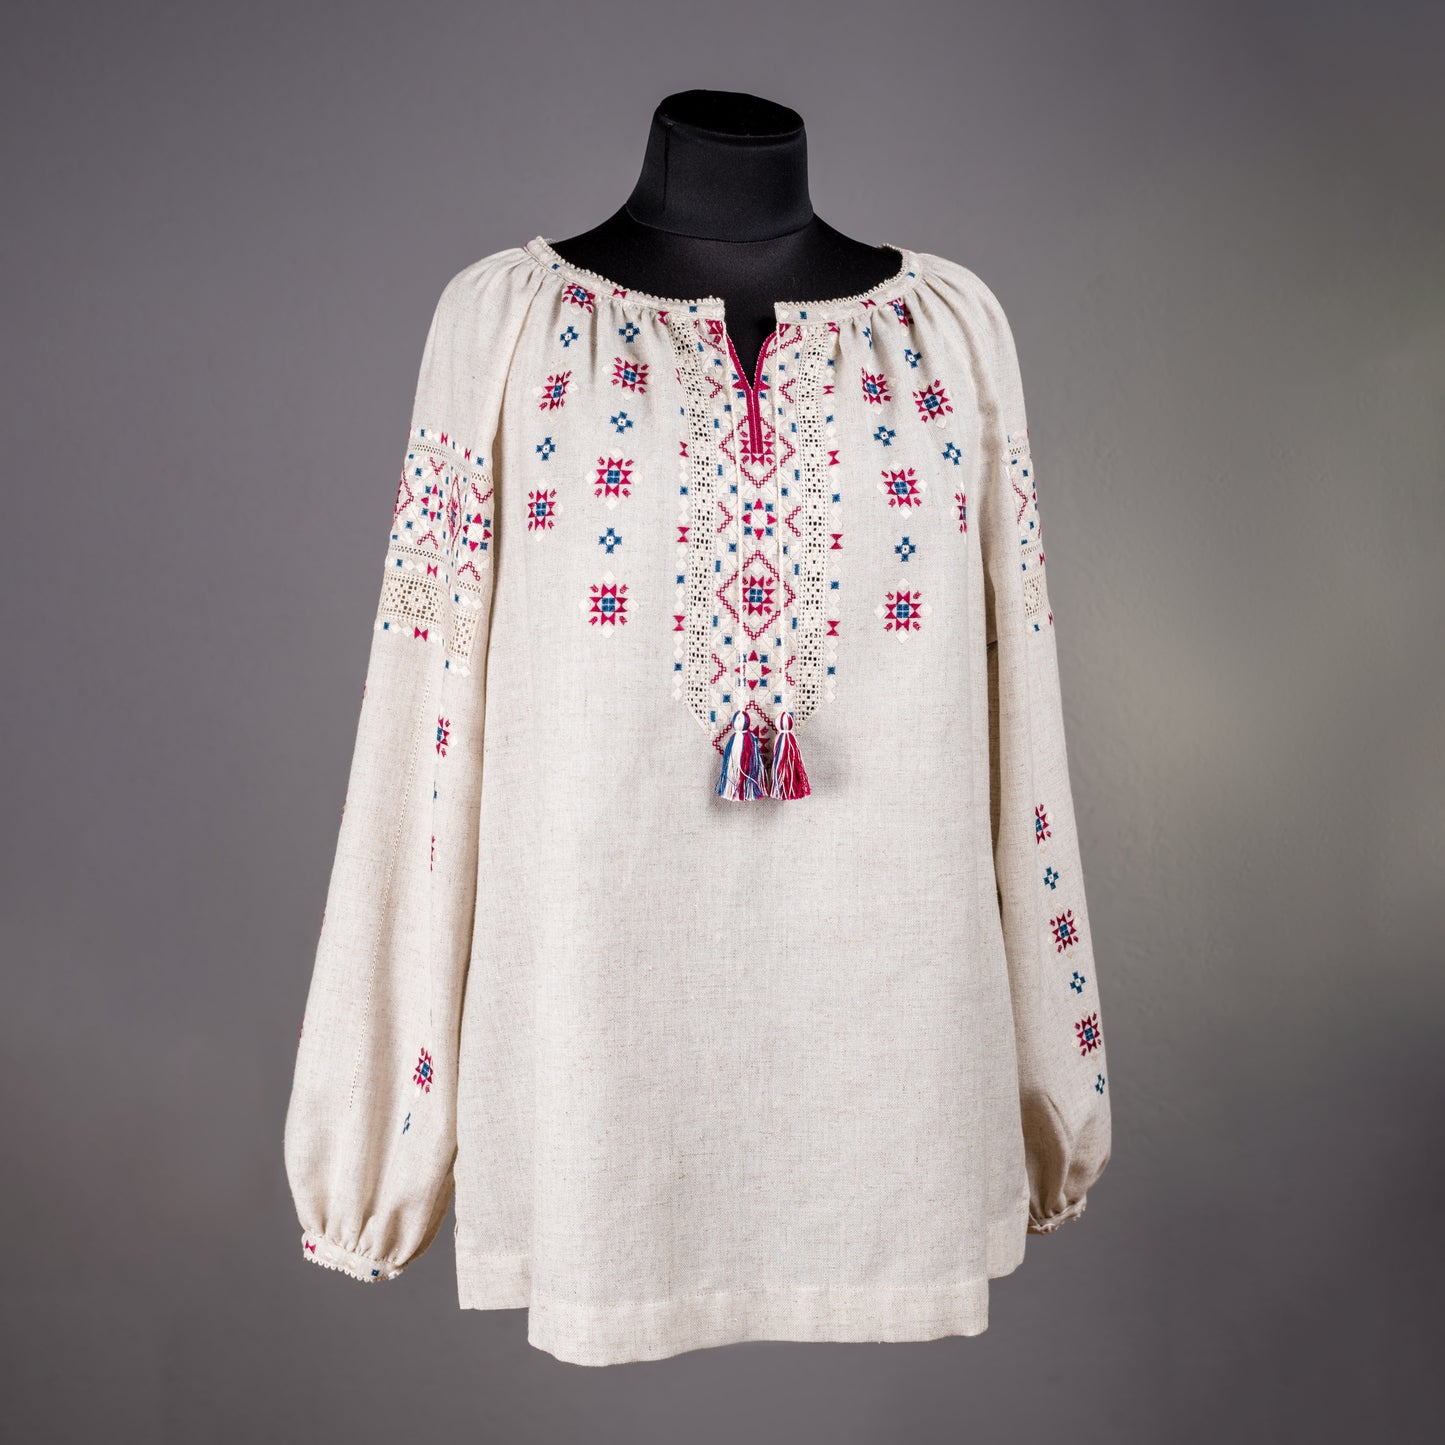 Ukraine, Lesia Pona / Pokuttya Folk Art, Hand Embroidered Women’s Linen Blouse 5